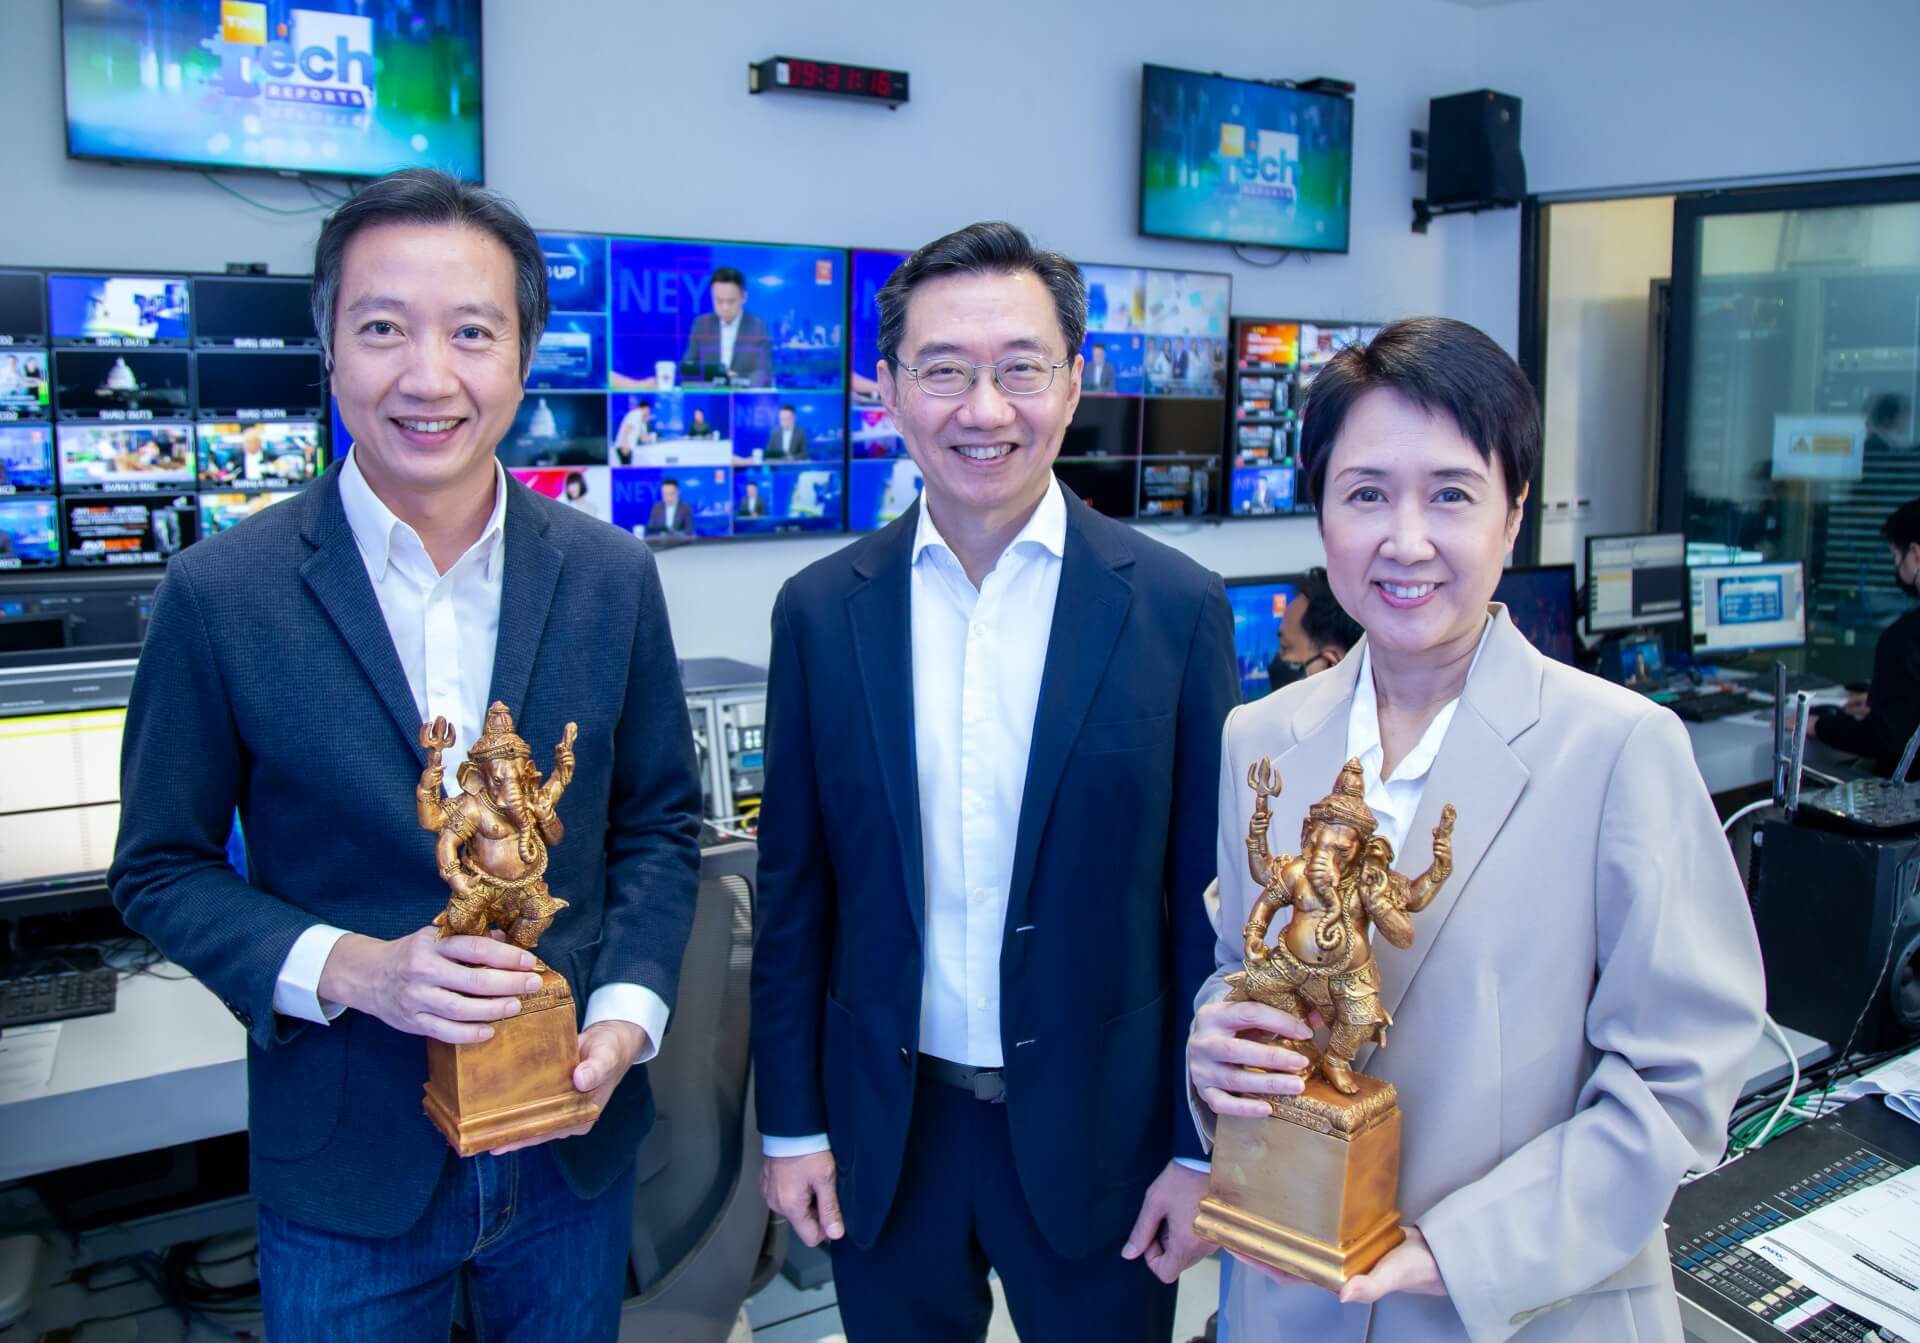 เกียรติยศคนทีวี…กลุ่มทรู คว้า 2 รางวัลแห่งความสำเร็จ จากงานประกาศรางวัล พระพิฆเณศวร์ ครั้งที่ 1 ประจำปี 2566